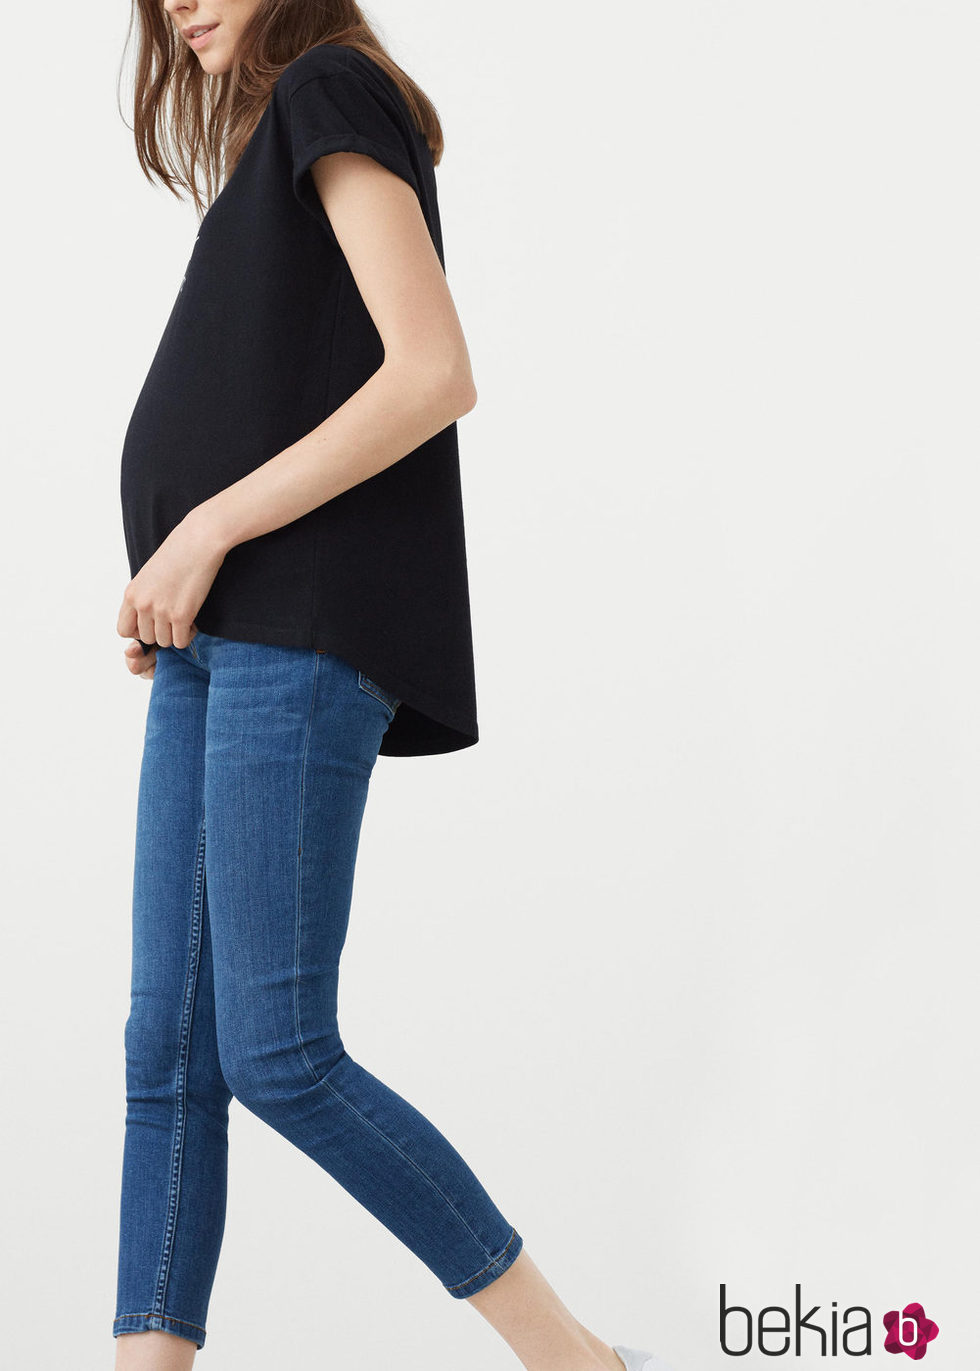 Jeans tiro alto medio denim en negra de la nueva colección Maternity 2016 para Mango